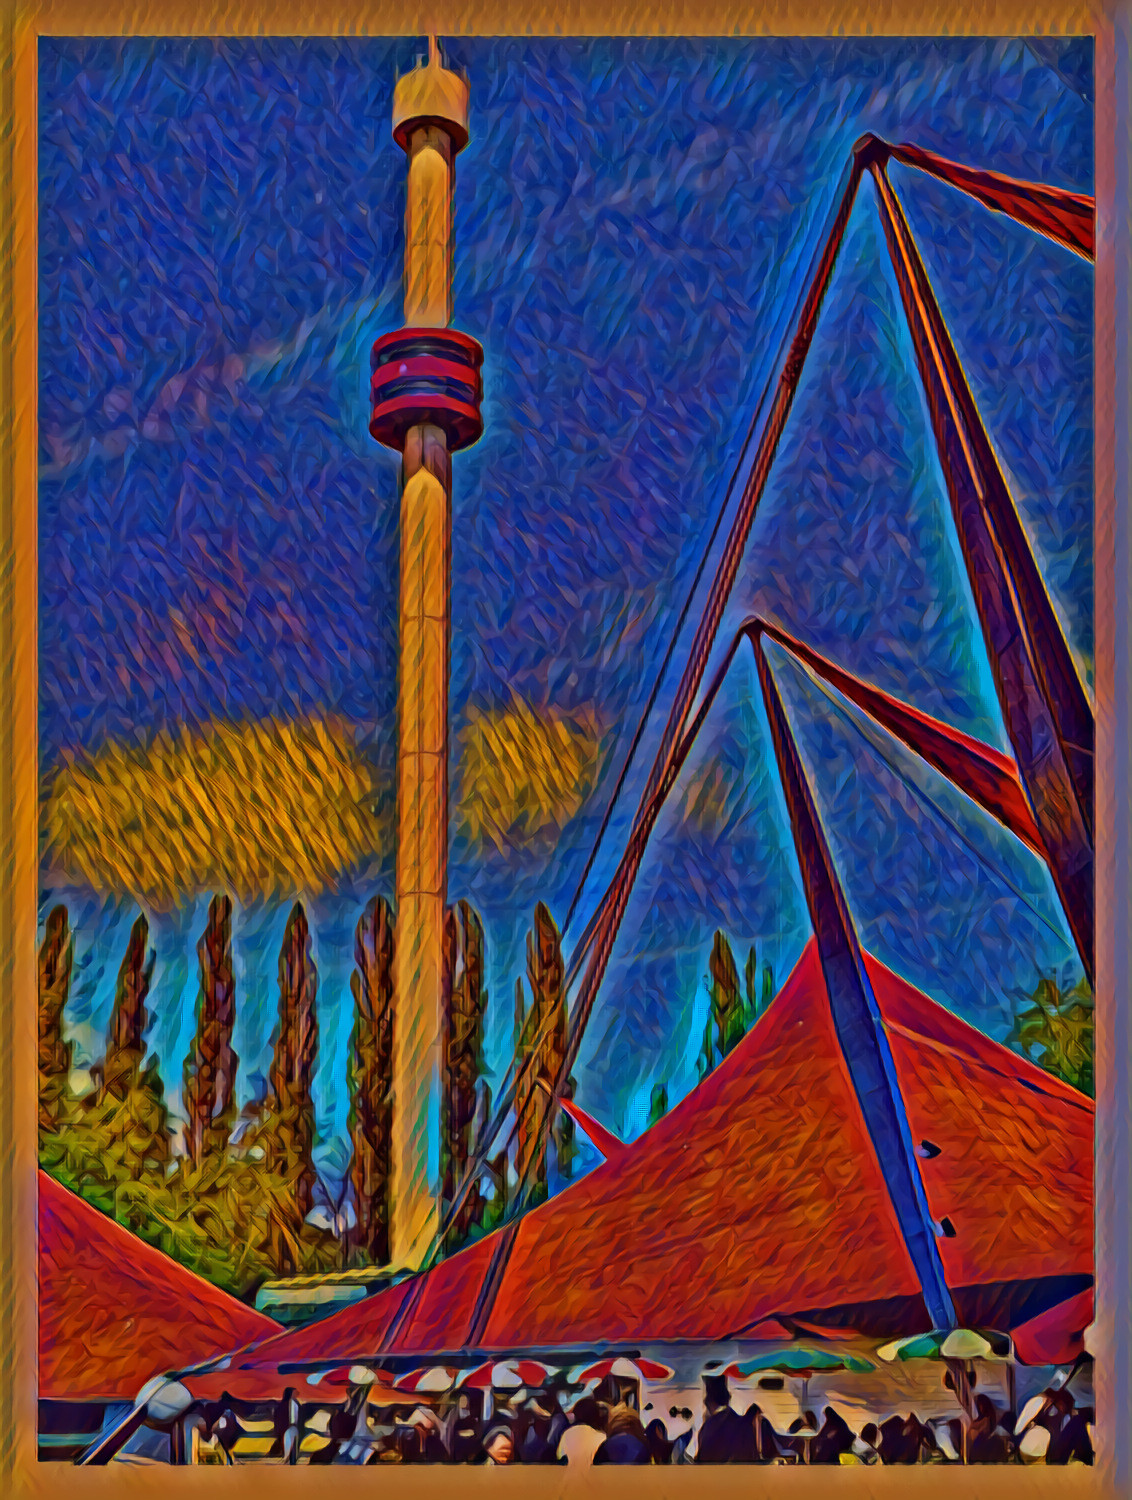 Tower of La Ronde, Expo 67 (Montreal) / Essay No.6